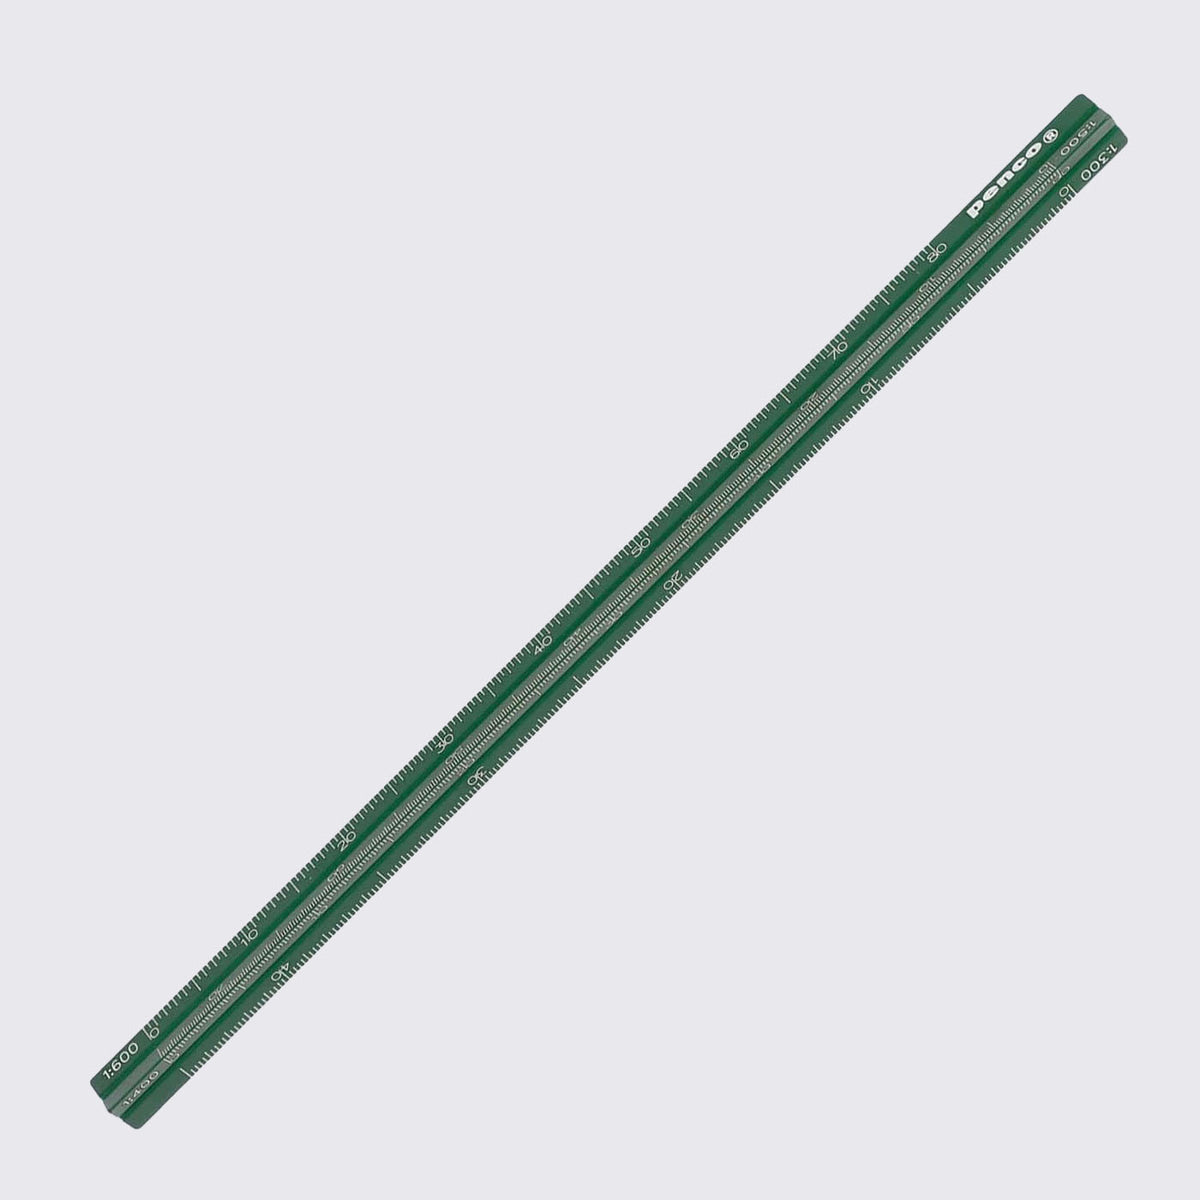 Penco / Dreikant / Maßstab / Drafting Scale Green / 15cm